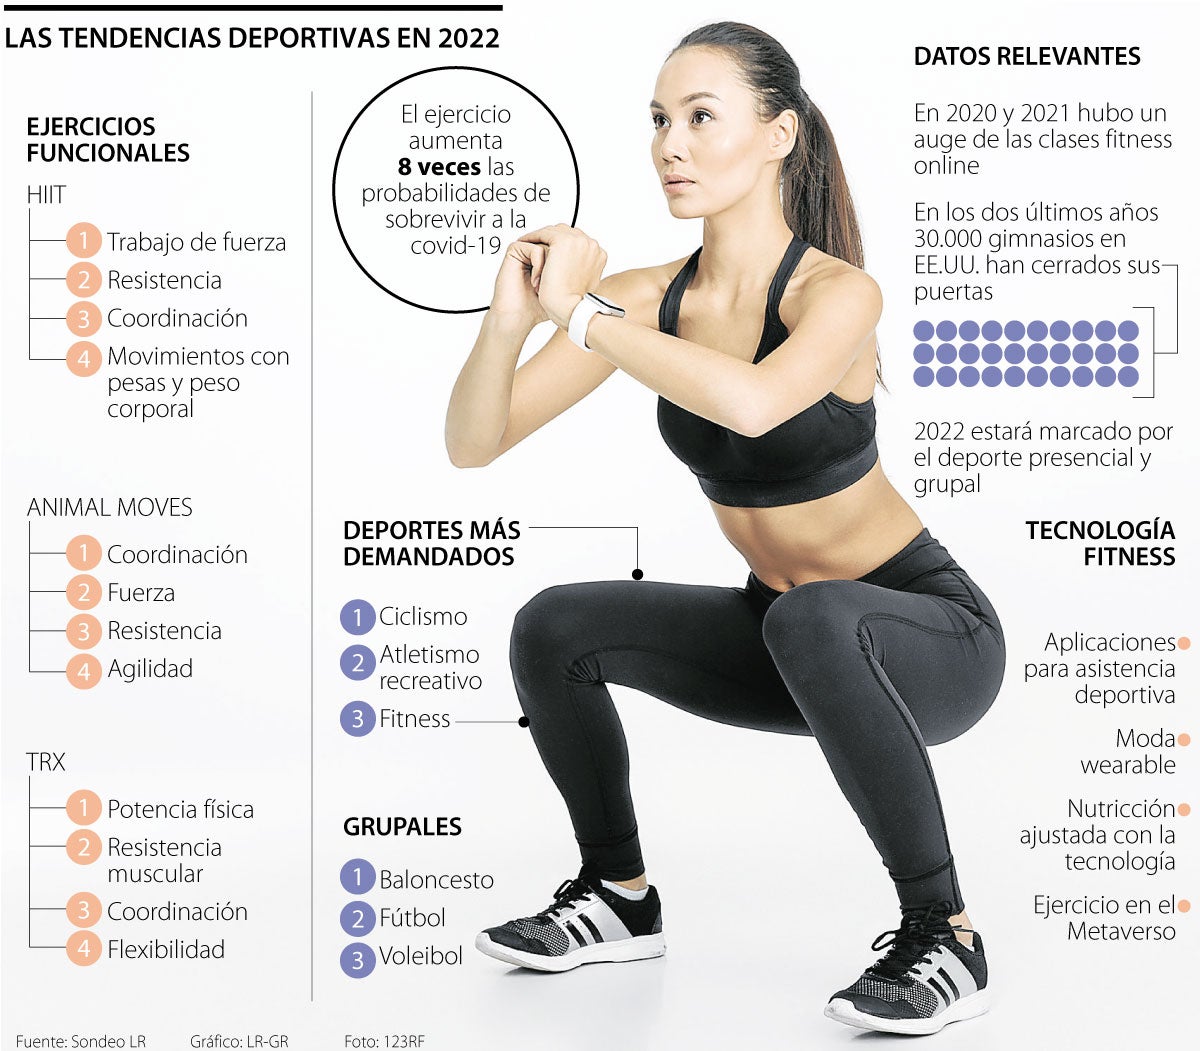 10 marcas deportivas peruanas para motivarte al entrenar, Ropa deportiva, Entrenamiento, deporte, ejercicios, moda, tendencias, VIU